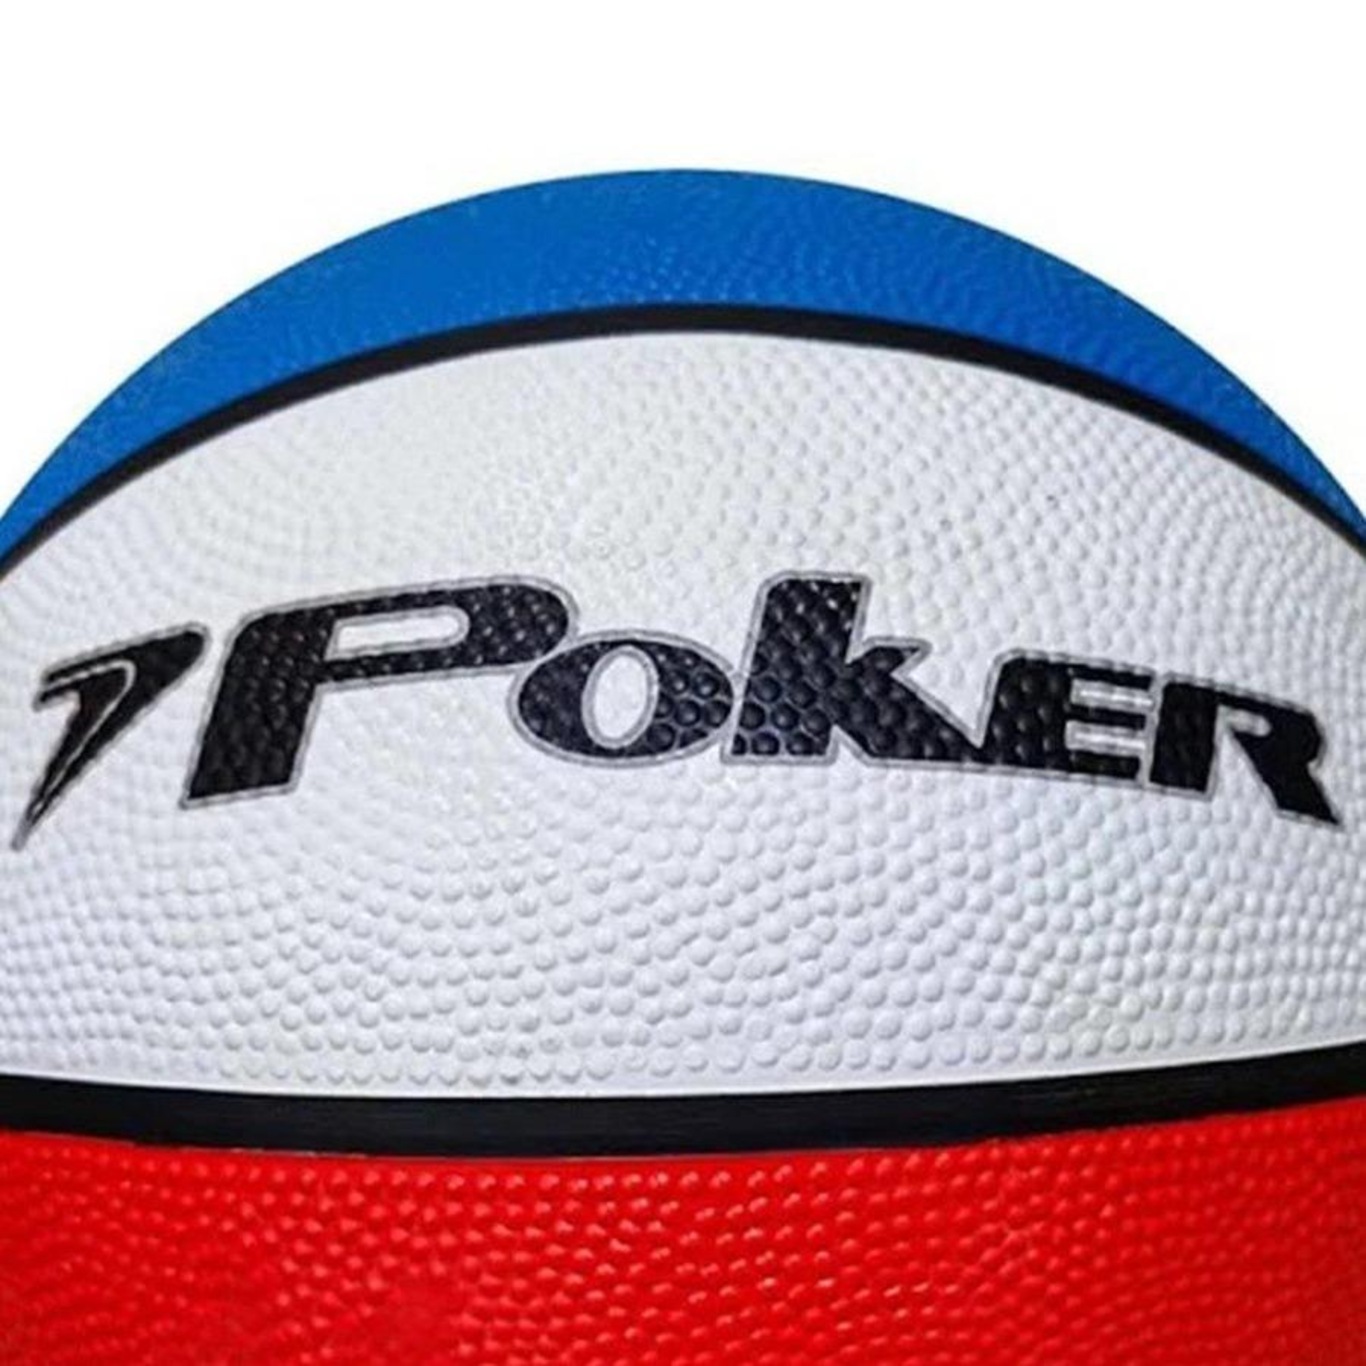 Bola Poker Basquete Outdoor 7 - Branco e Azul - Joinville Sportcenter